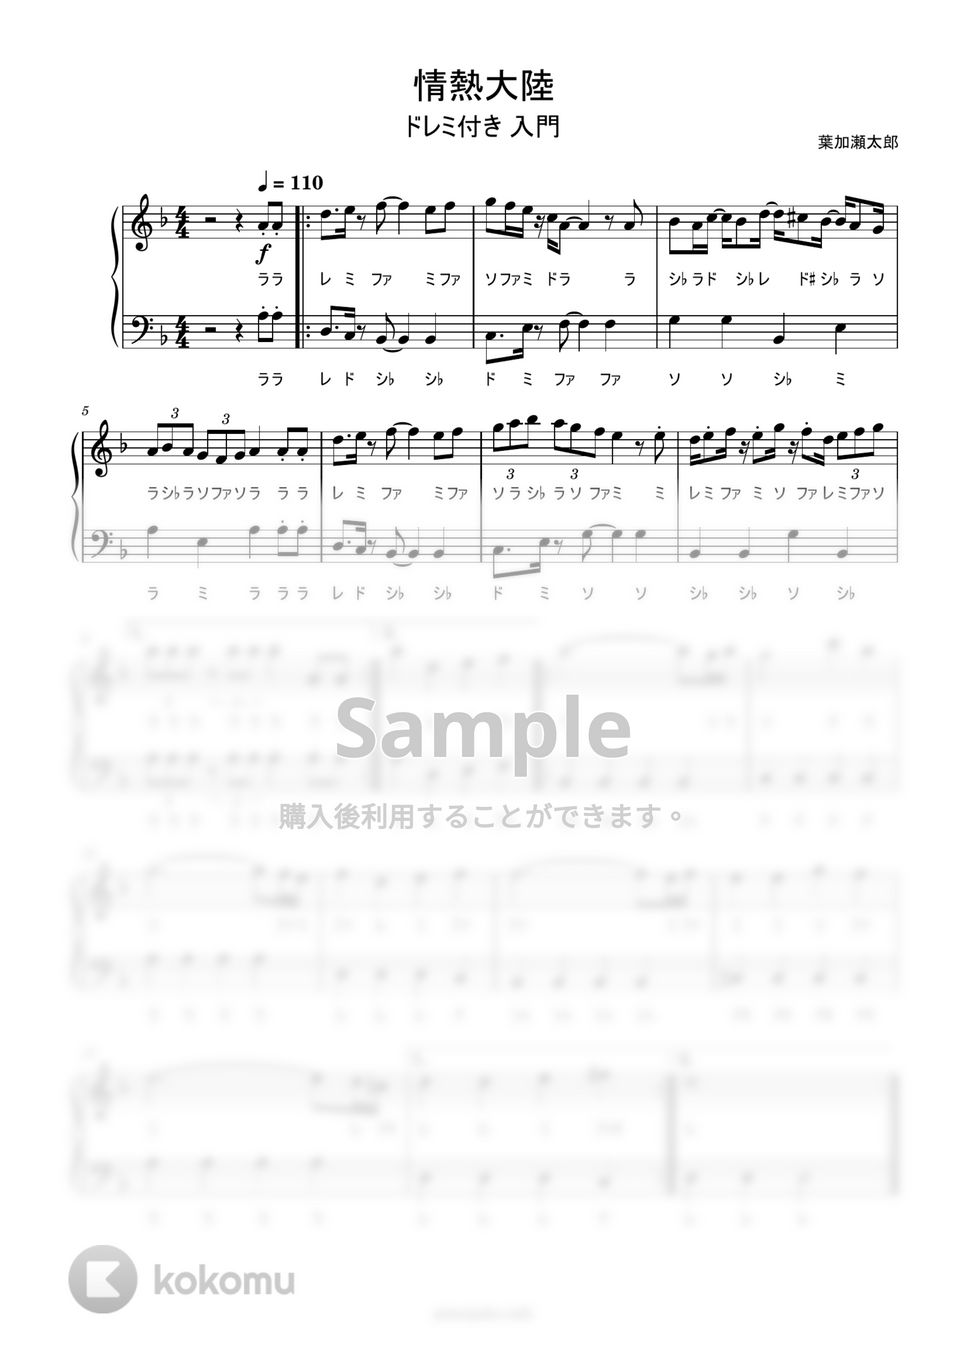 葉加瀬太郎 - 情熱大陸 (ドレミ付き簡単楽譜) by ピアノ塾